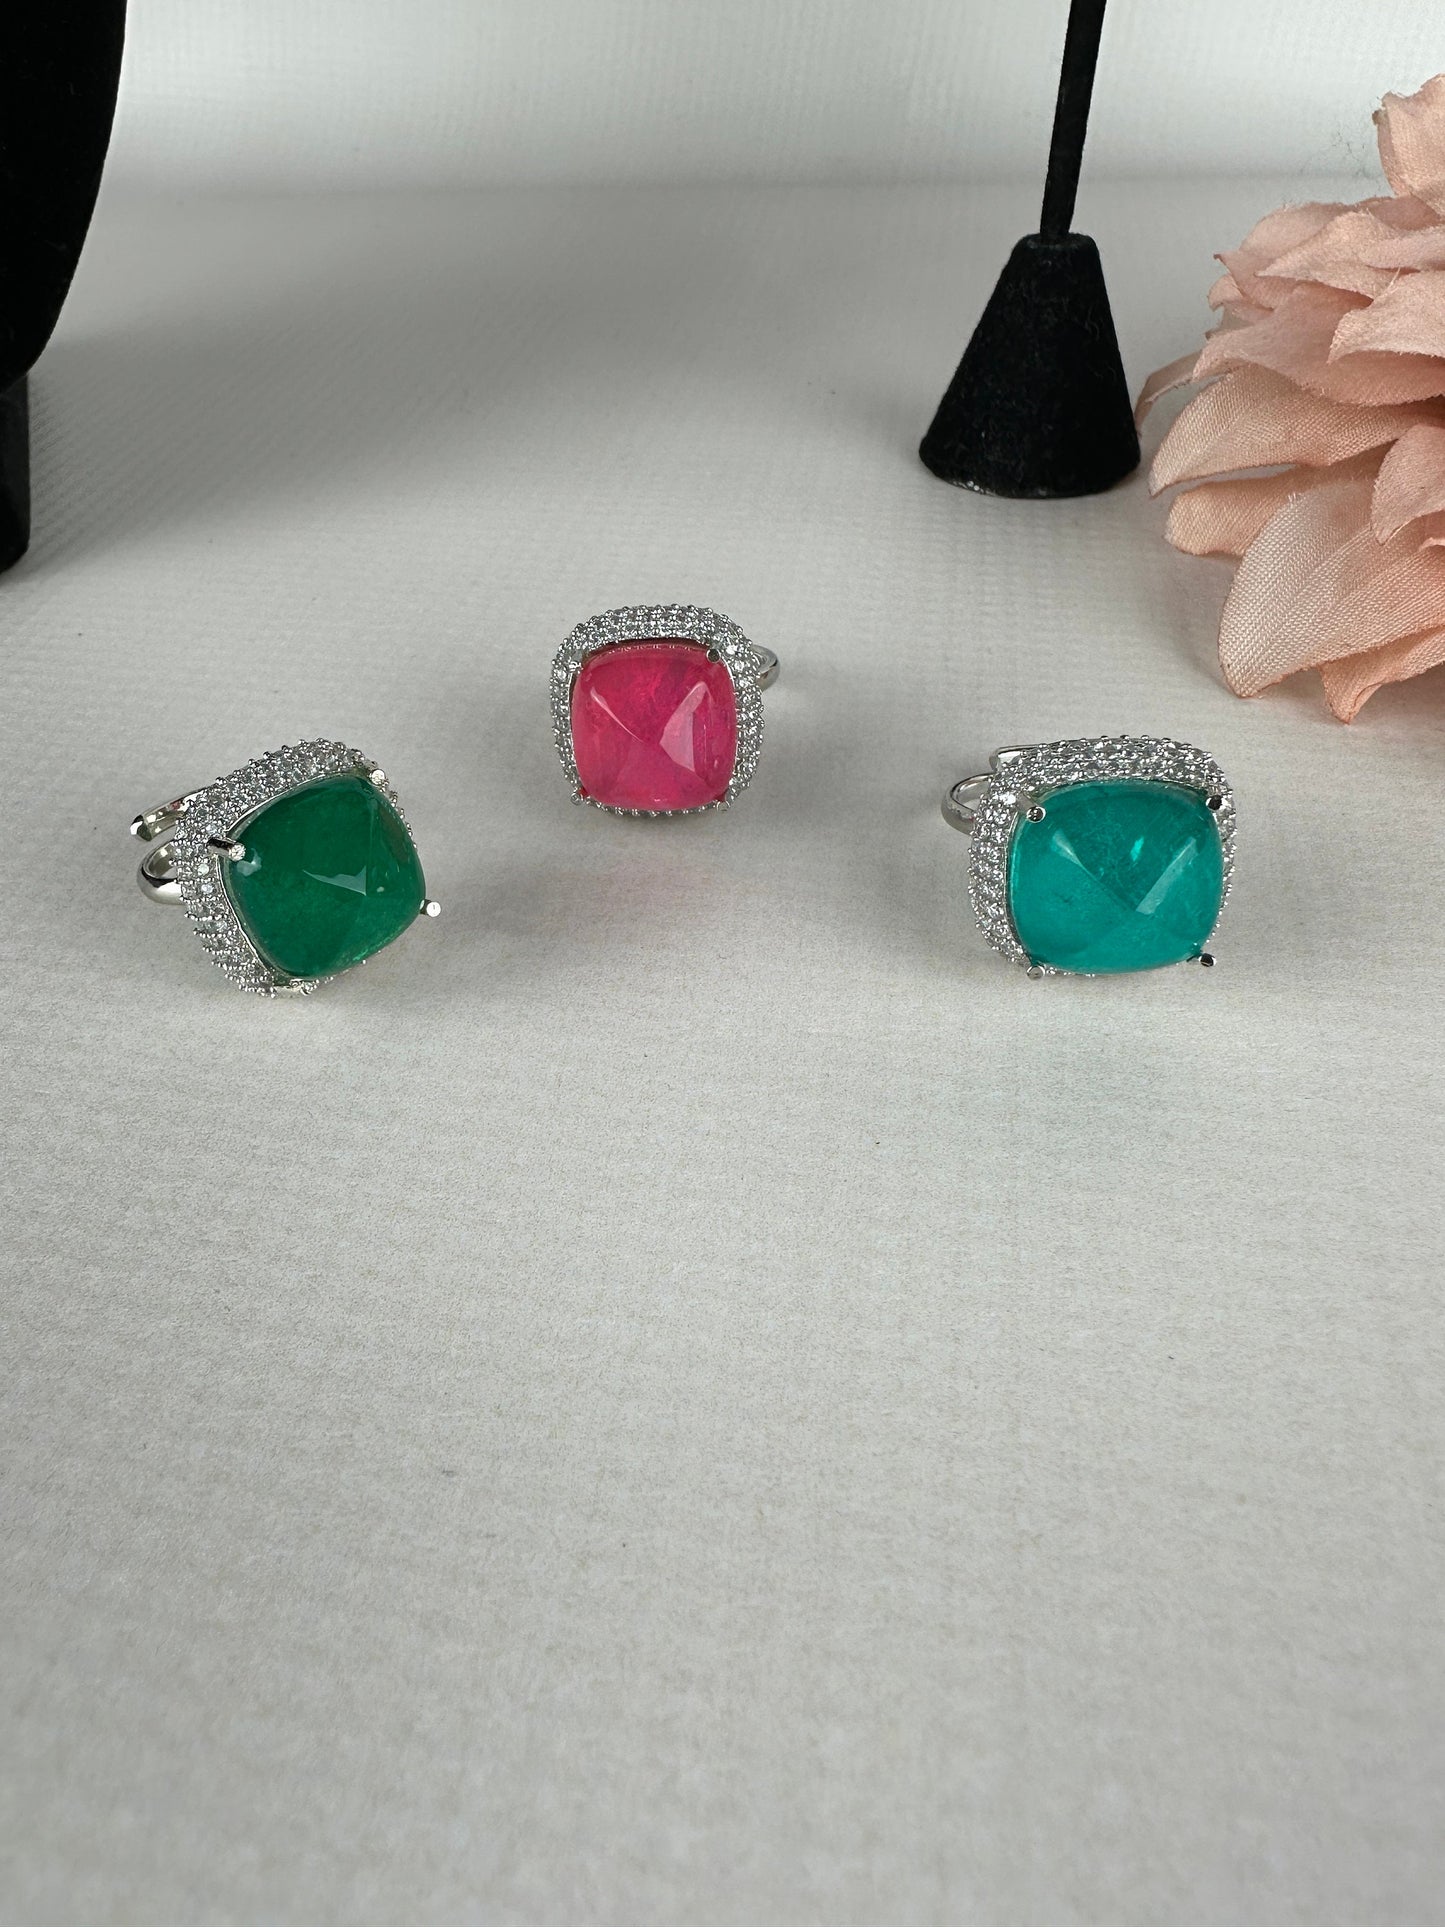 Moissanite Single Stone Ring/Emerald Green Ring/Pink Moissanite Doublet stone ring/Sabyasachi ring/Bright Semi precious Solitaire stone ring